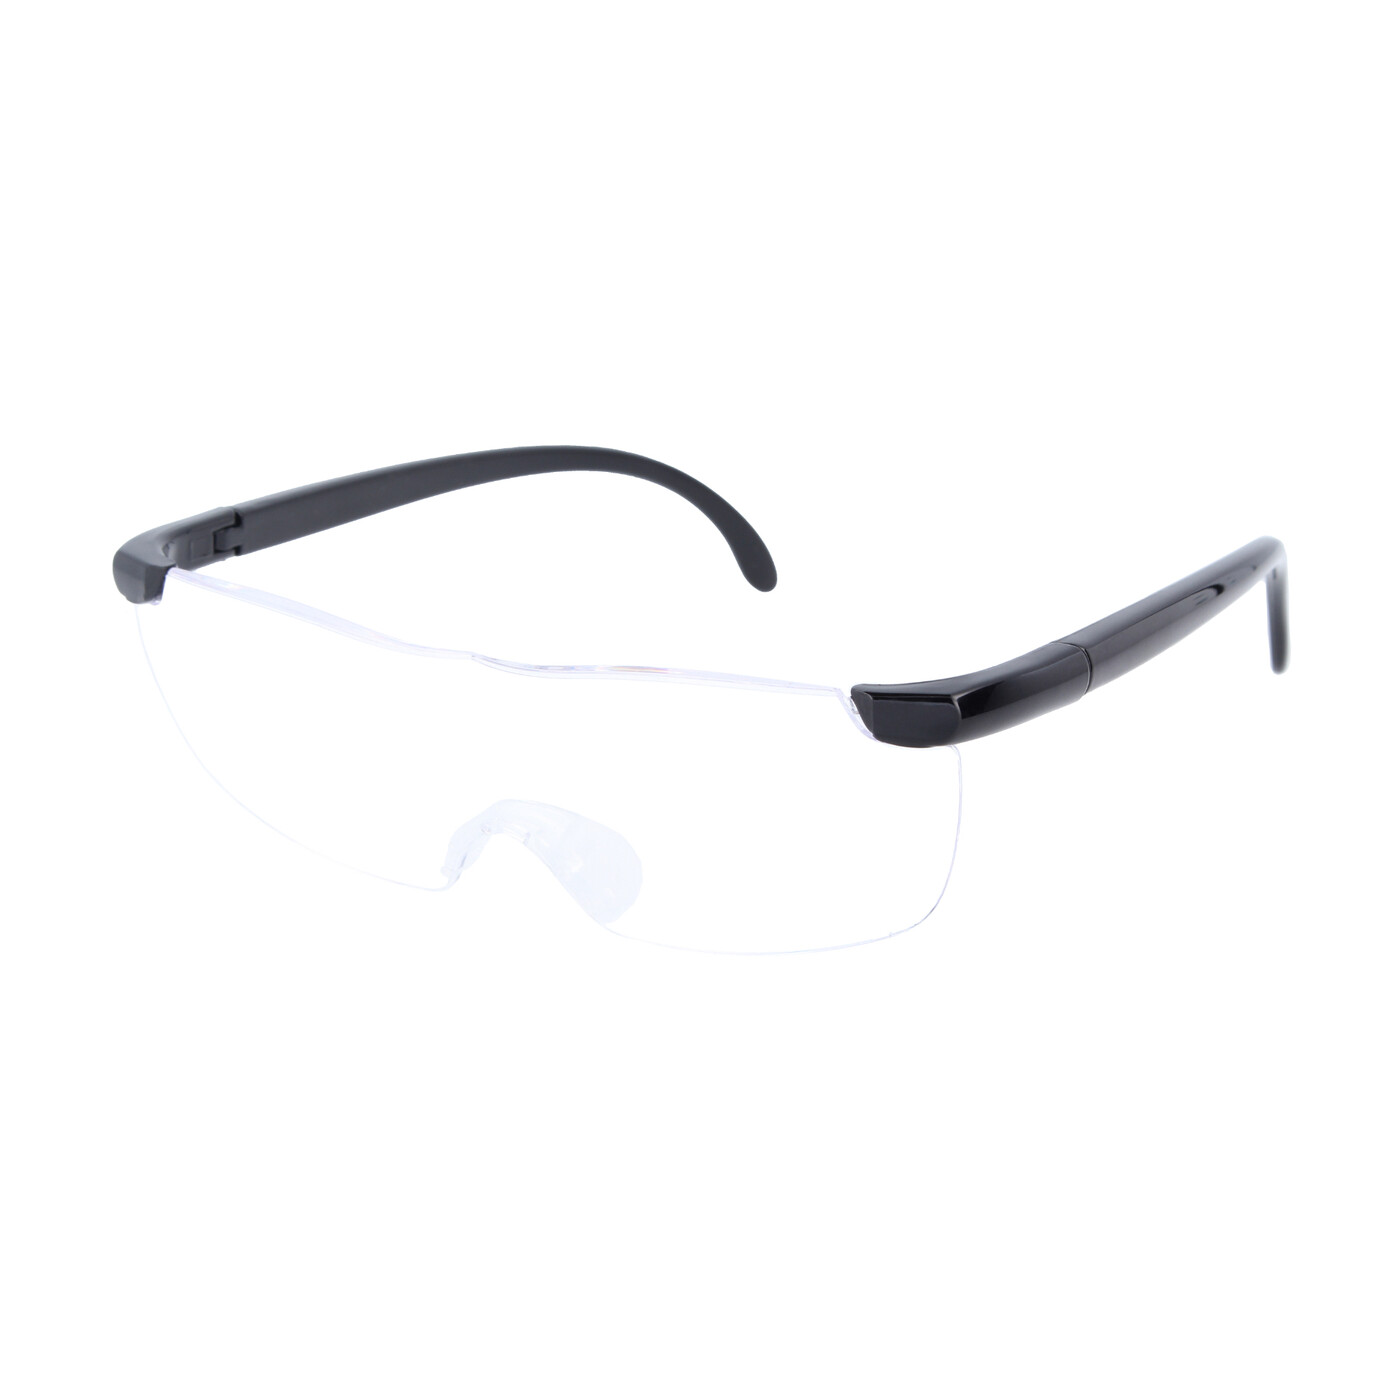 Schwimmbrille mit Sehstärke Kurzsichtigkeit Antifog UV Schutz 0 bis -10 dpt 